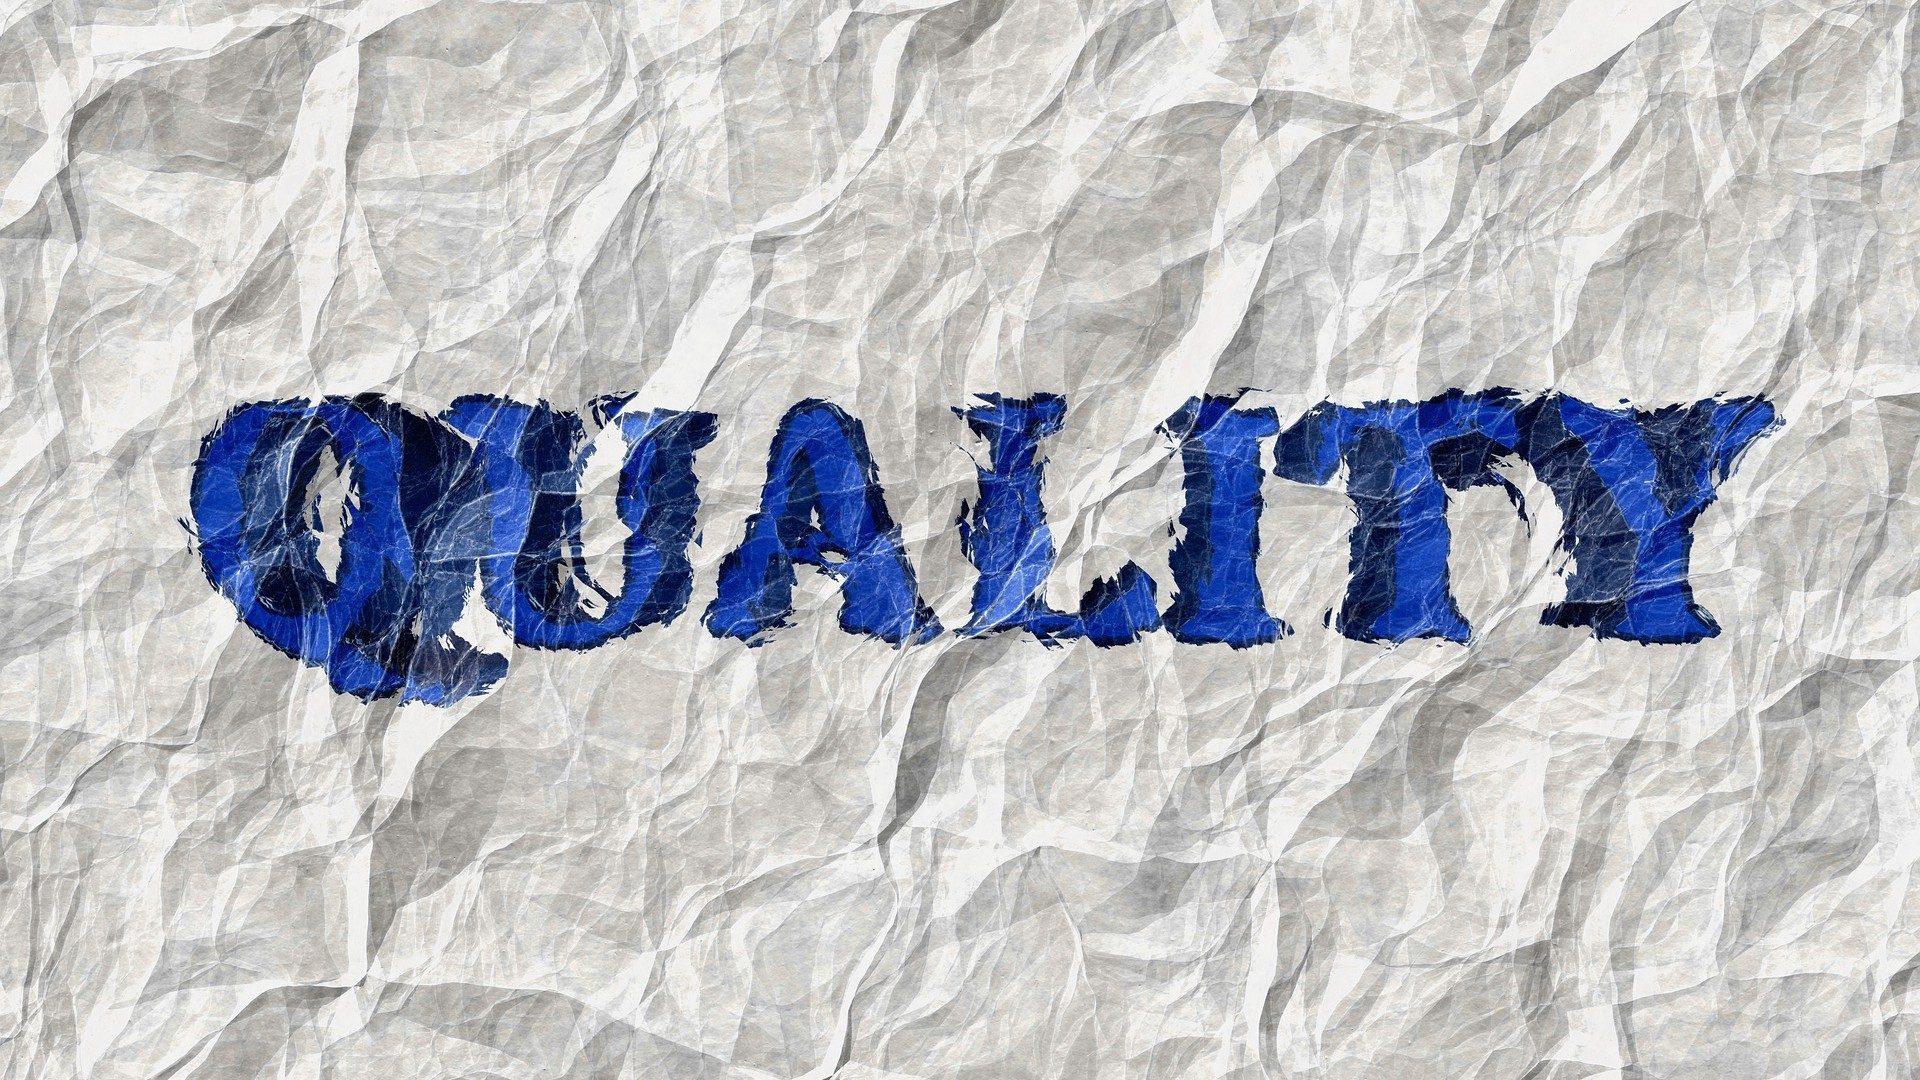 Schriftzug "Quality" in blau auf einem zerknitterten Blatt Papier